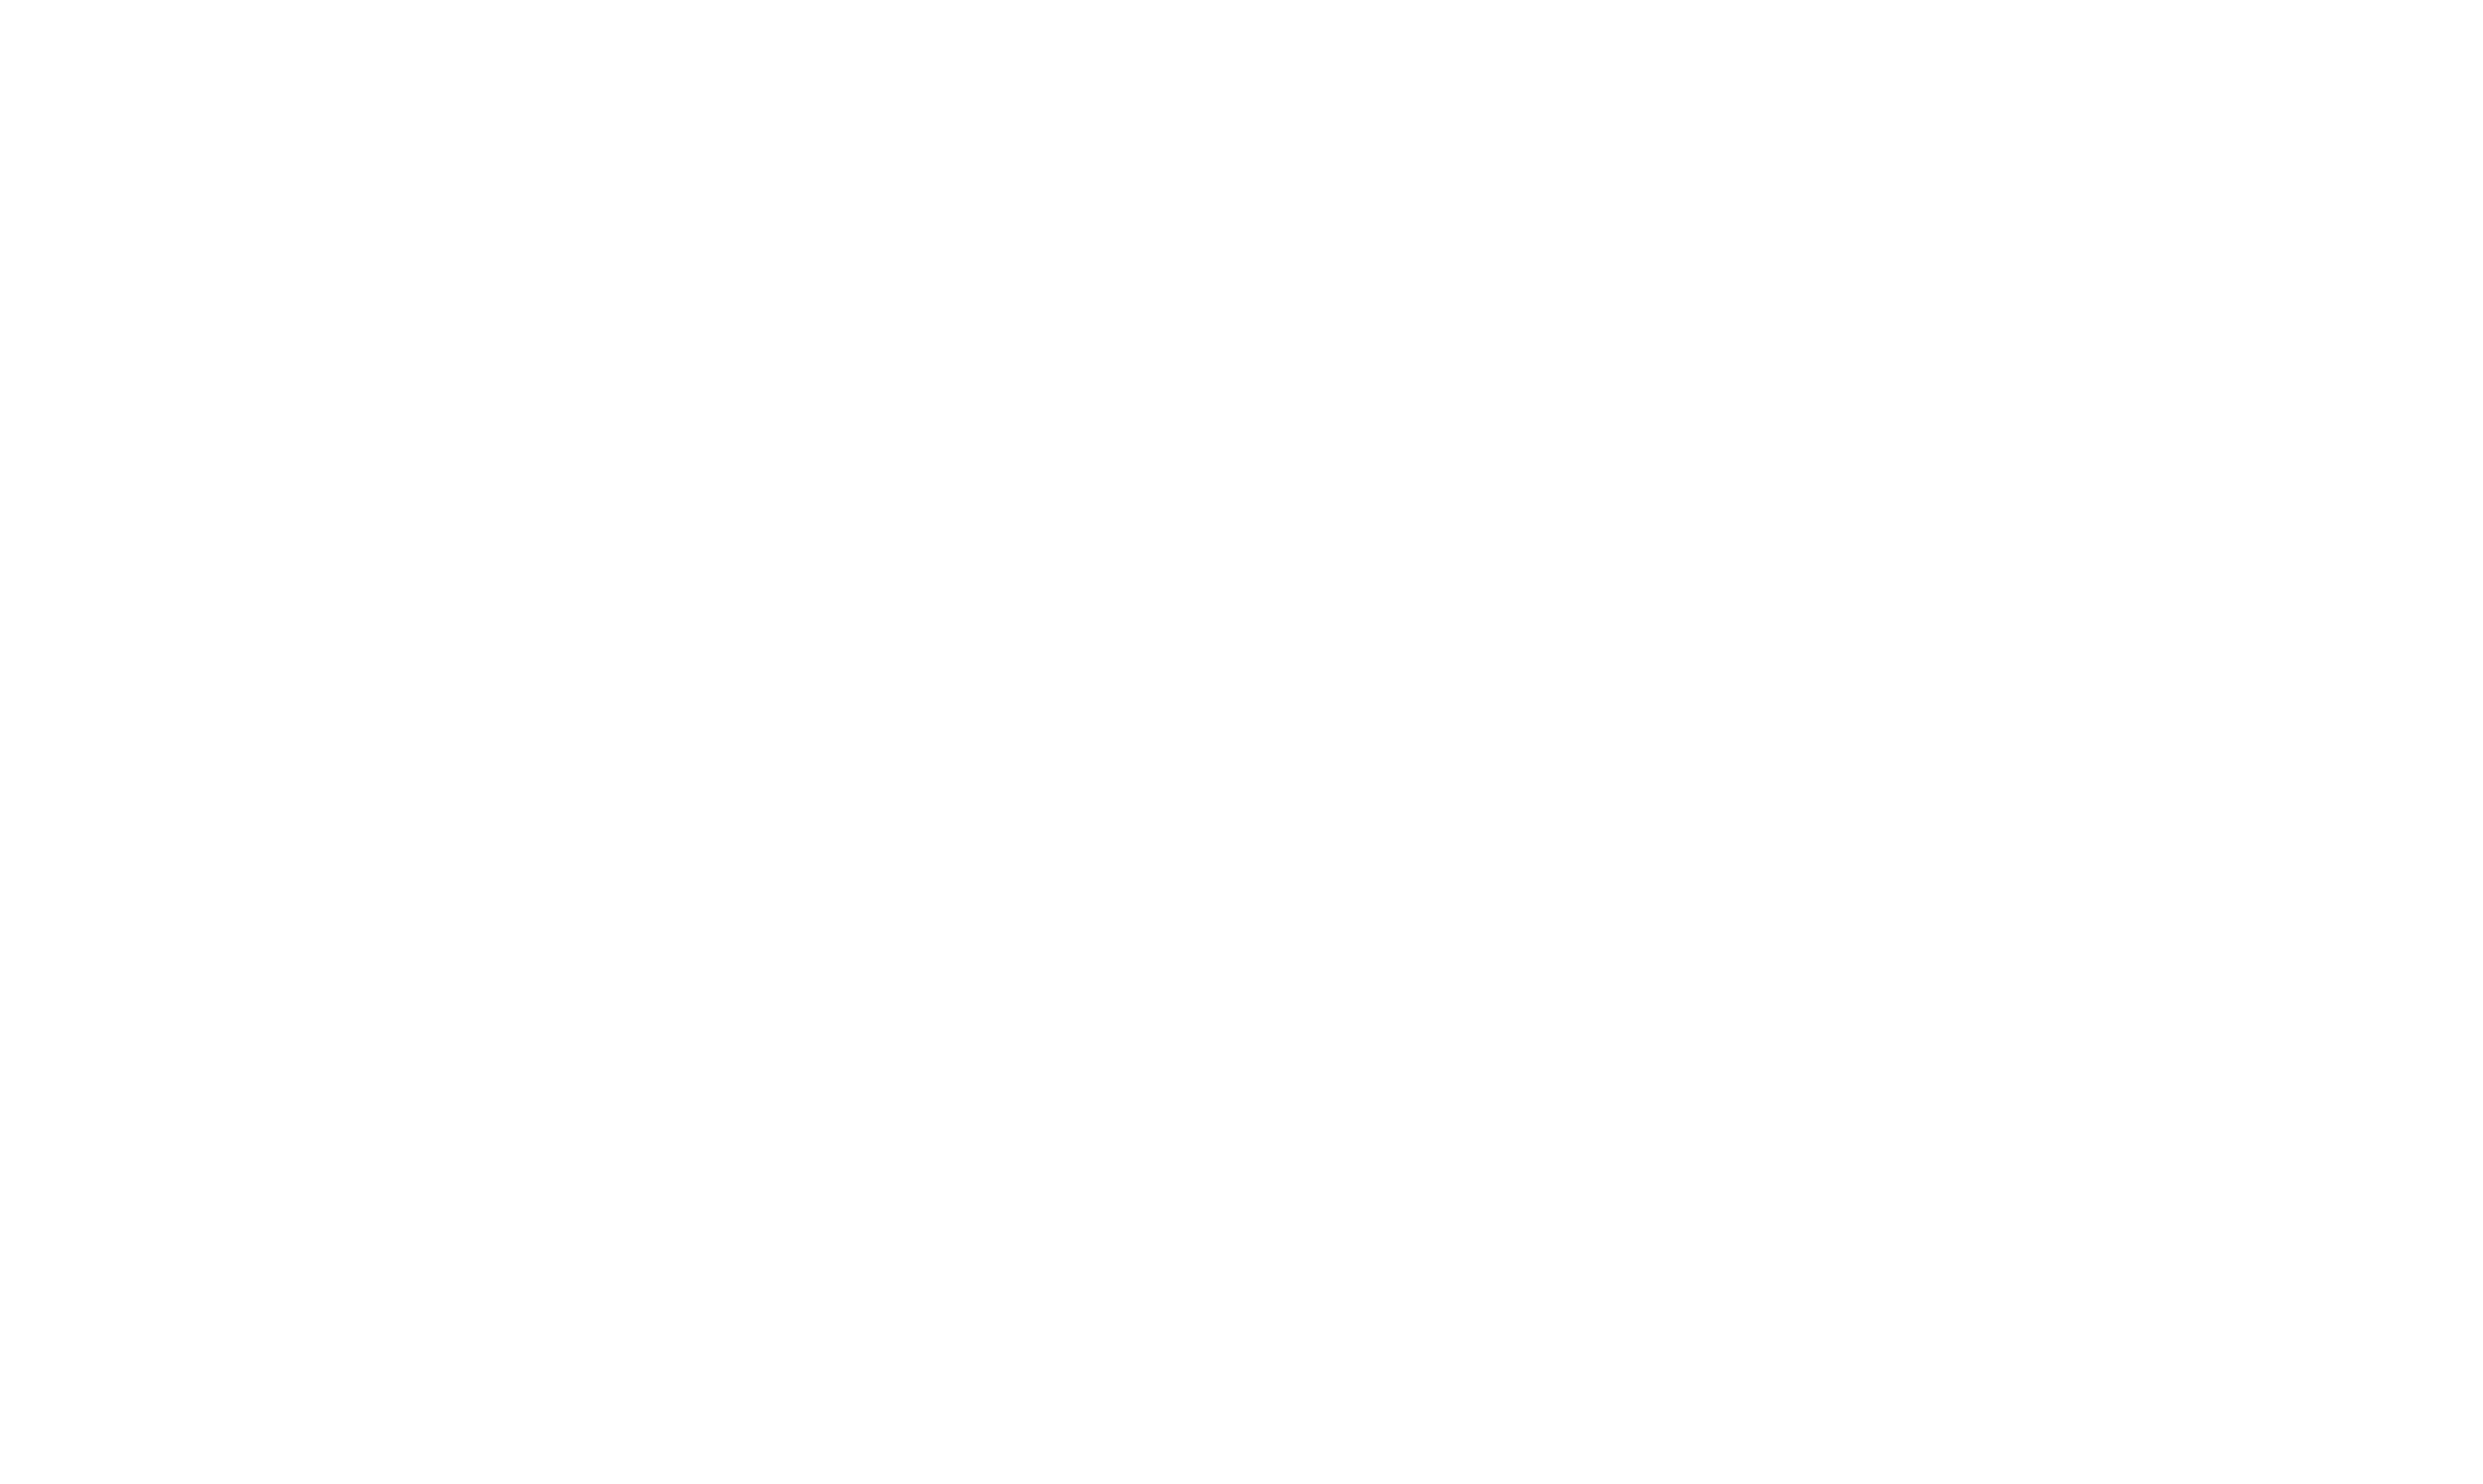 Triathlon series in The Netherlands